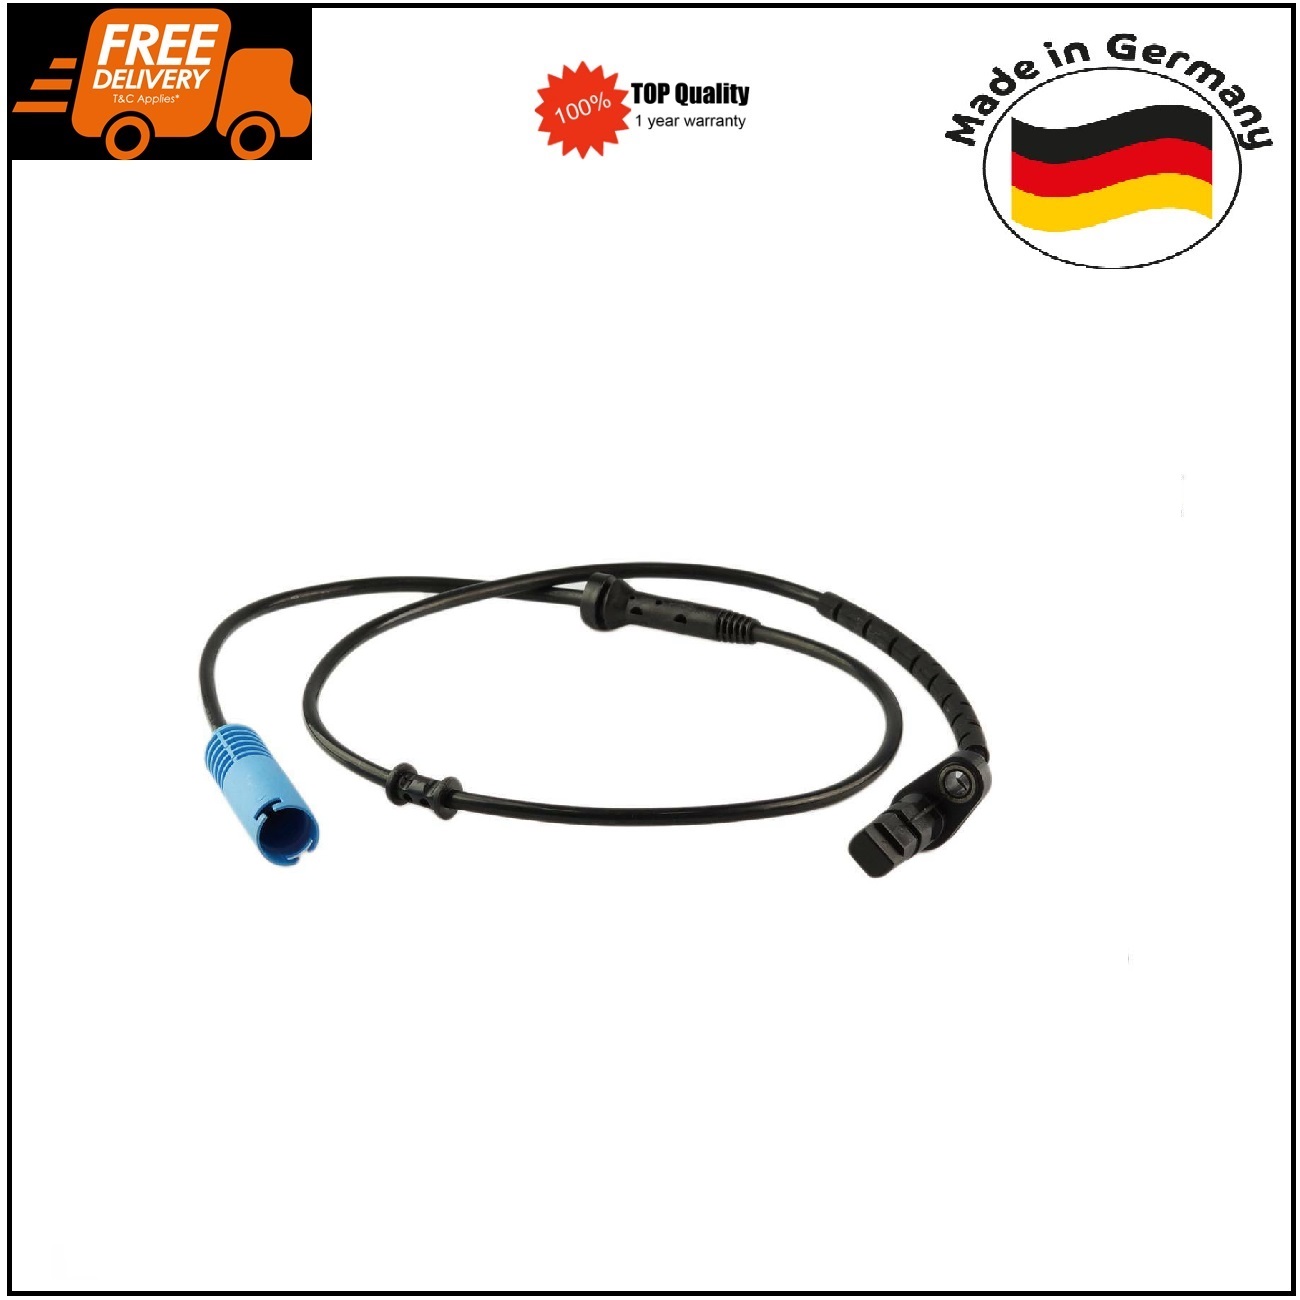 ABS Wheel Speed Sensor Rear for BMW E38 E52 730i 740i 750i 34521165533